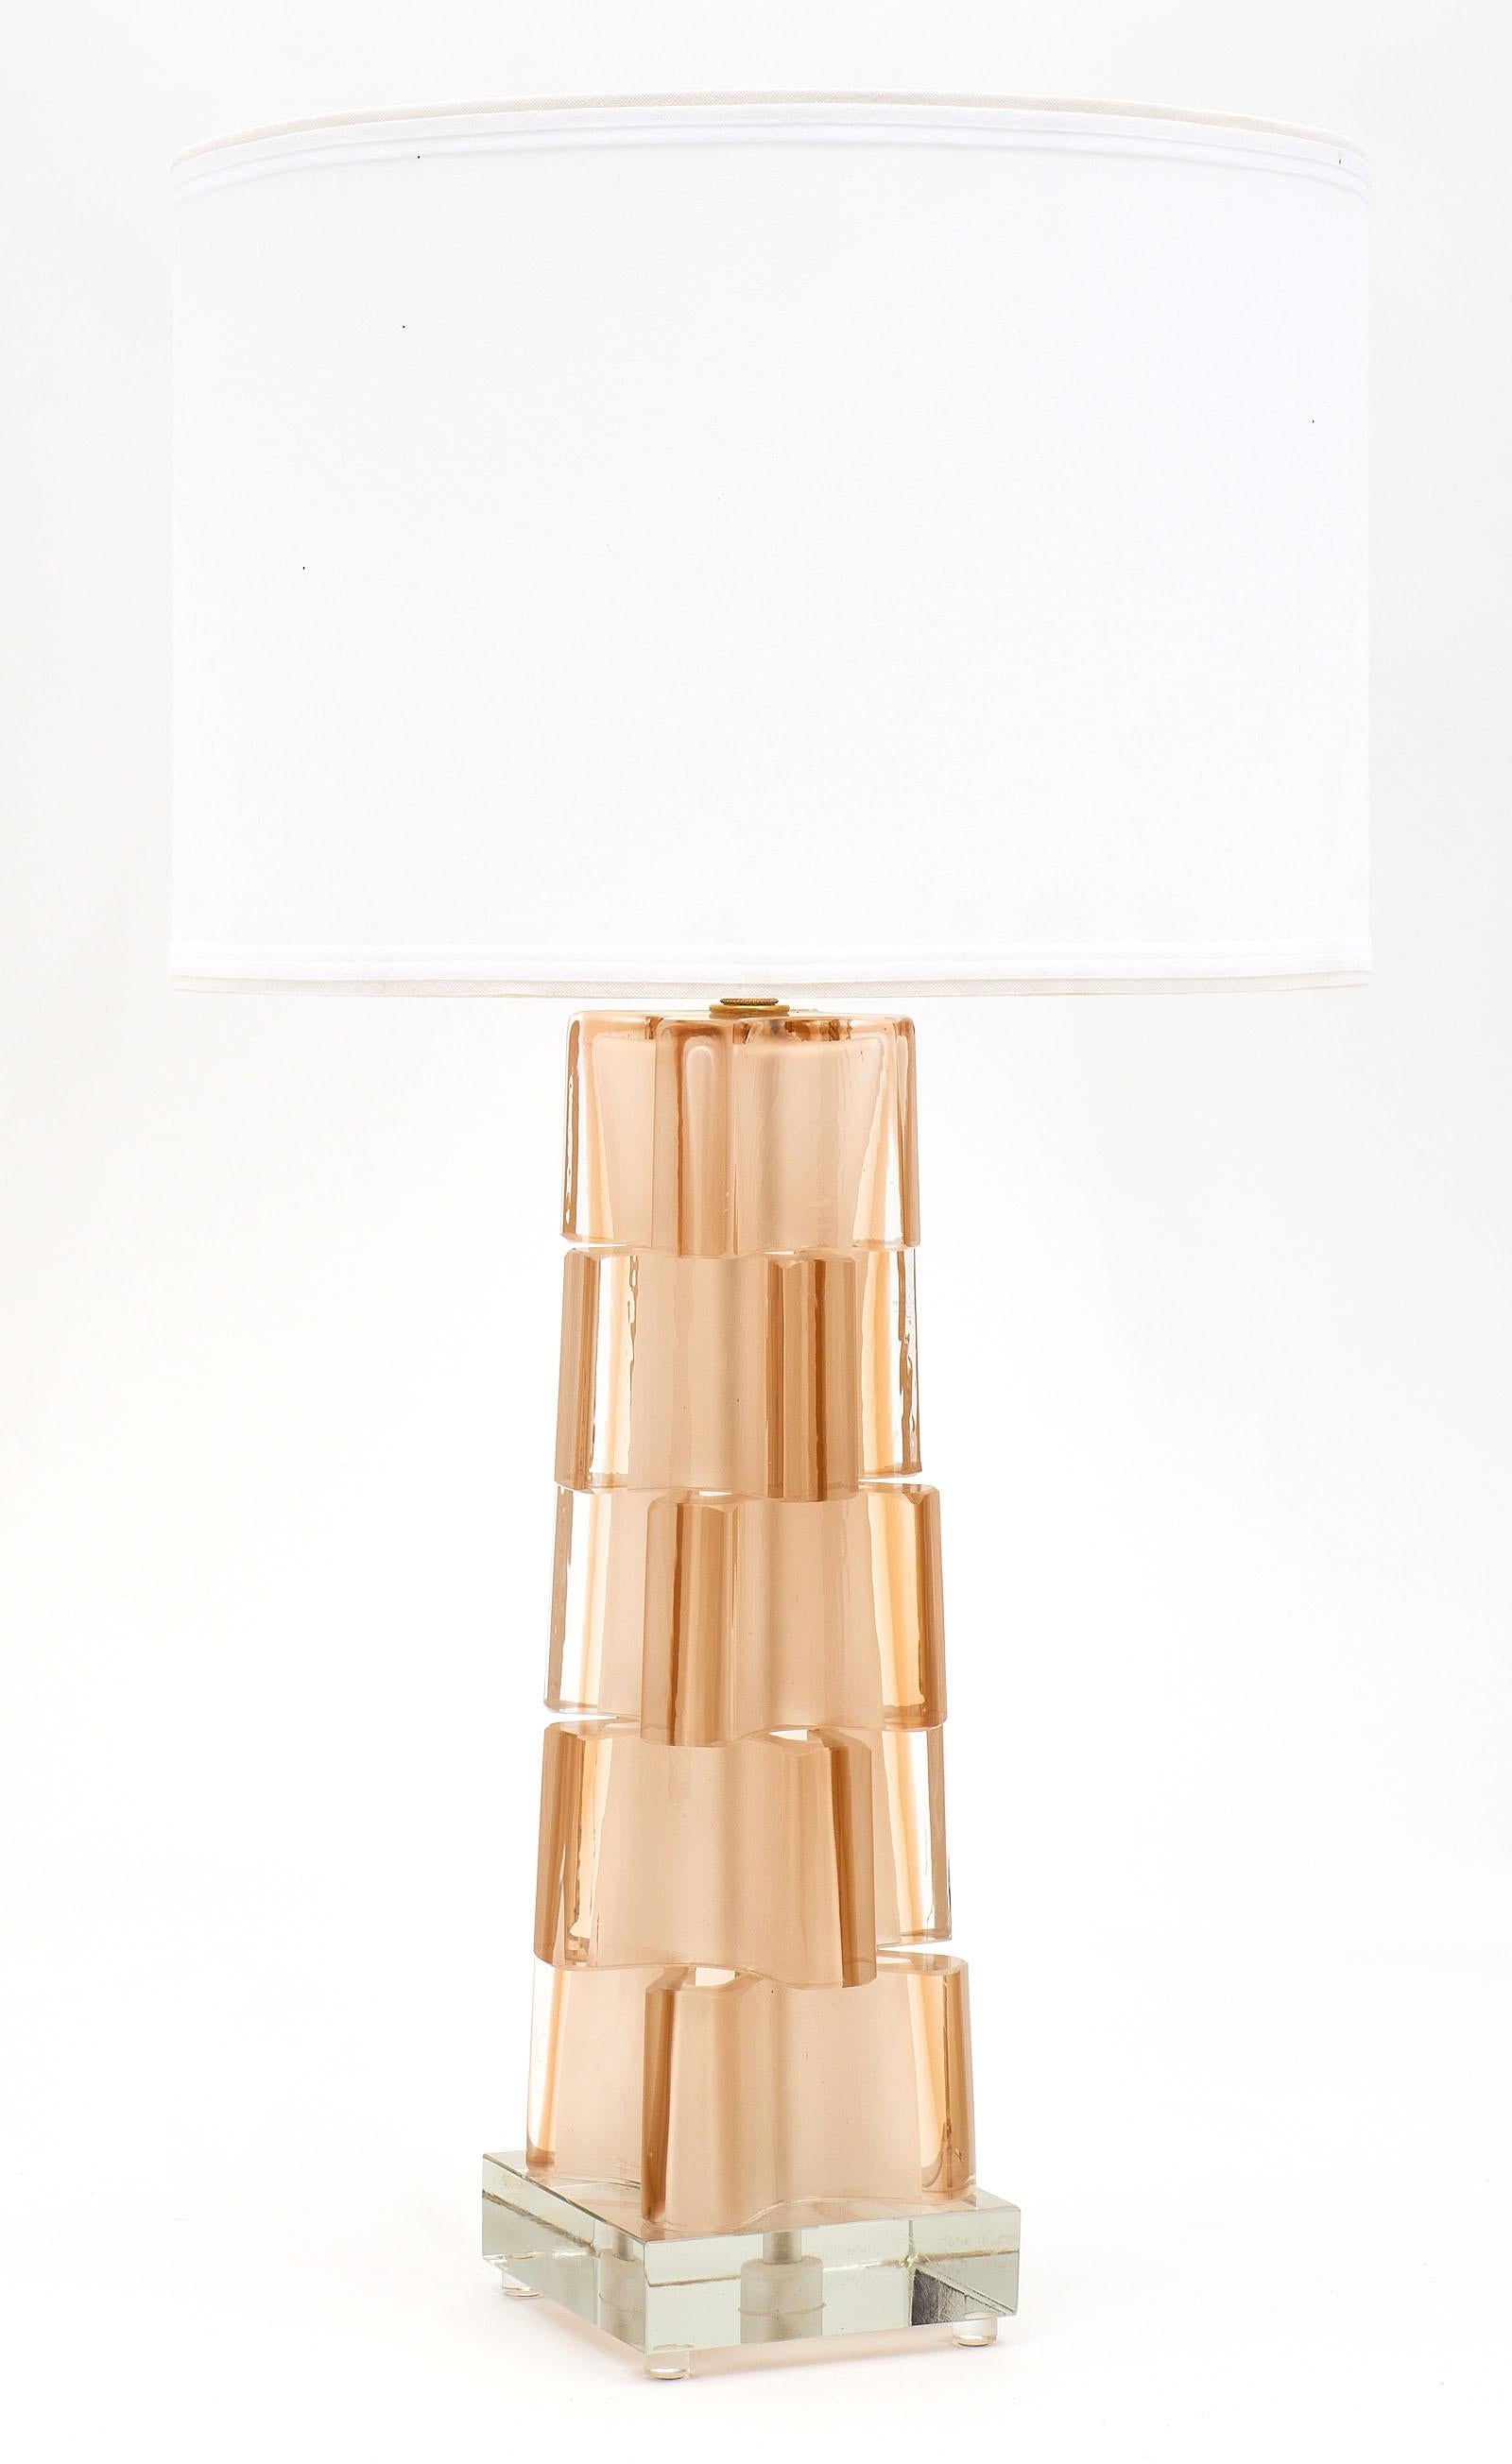 Rosa geometrische Lampen aus Muranoglas. Dieses architektonische Paar besteht aus fünf Komponenten, die zu einem facettenreichen Sockel verschmolzen sind. Die Komposition befindet sich auf einer klaren Glasplatte. Wir lieben die einzigartige Farbe